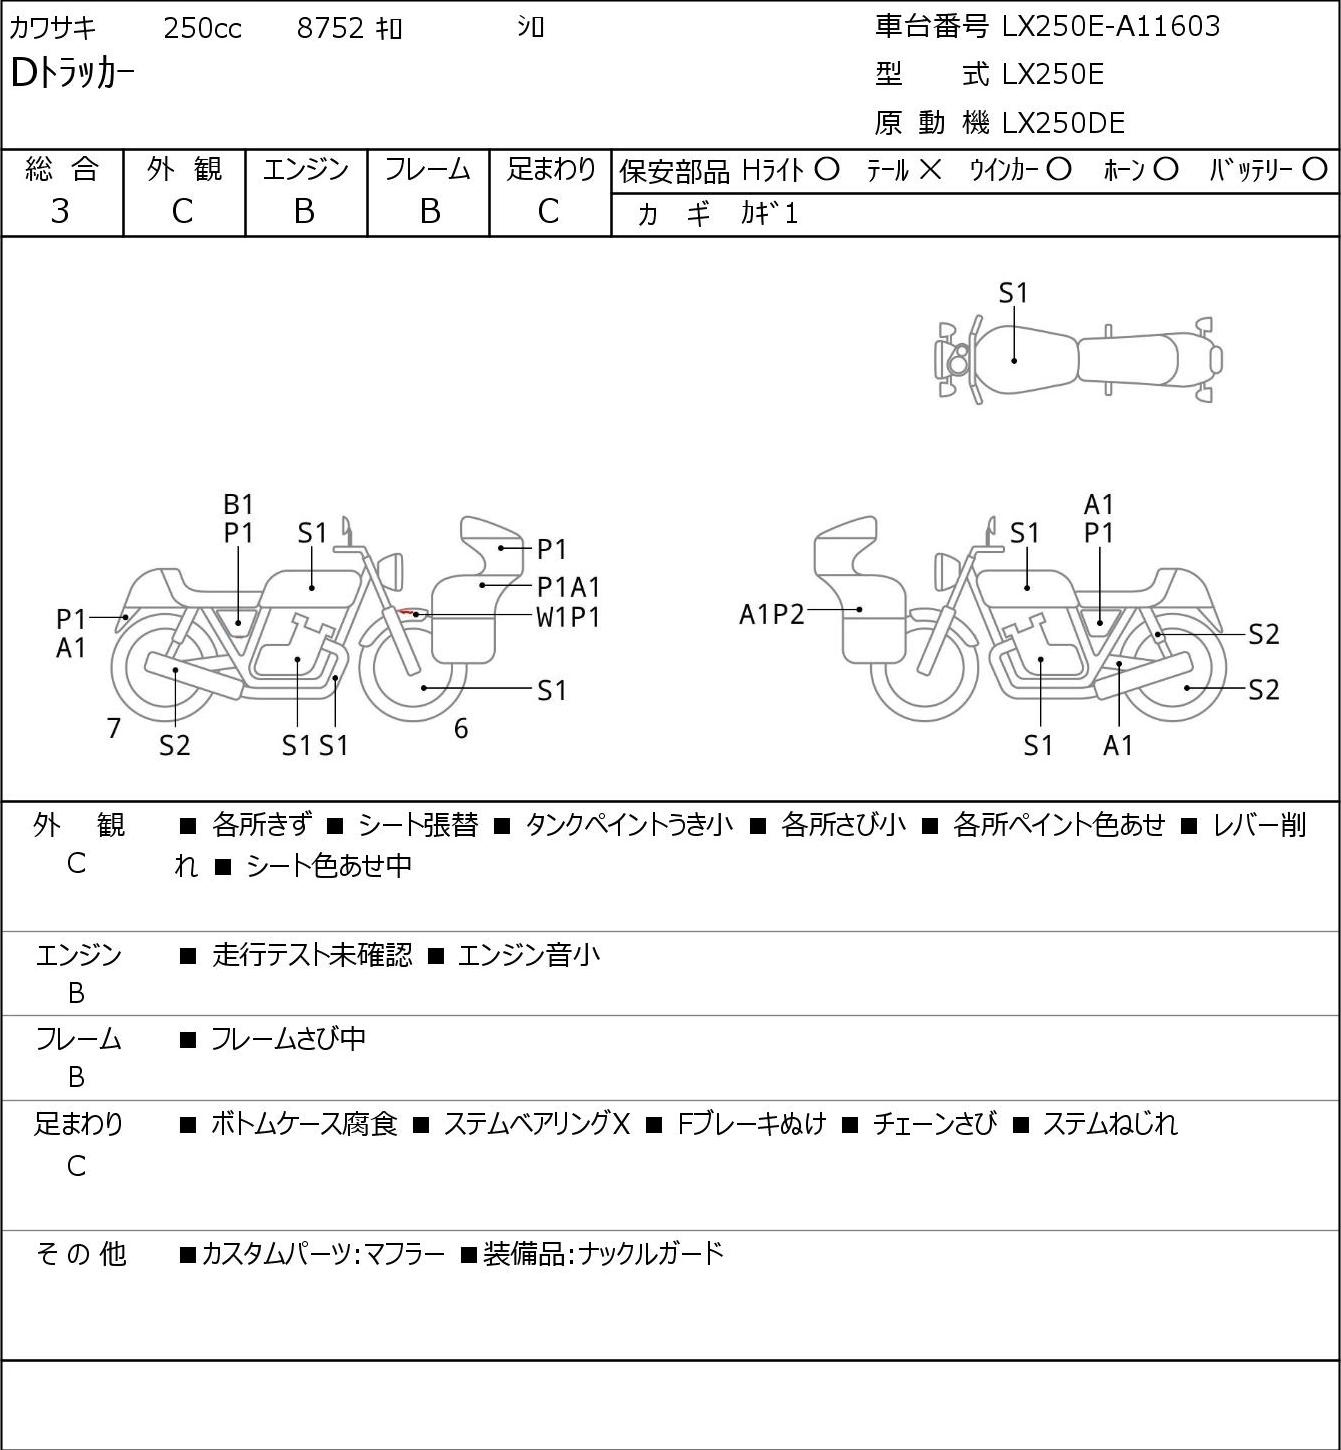 Kawasaki D-TRACKER LX250E г. 8752